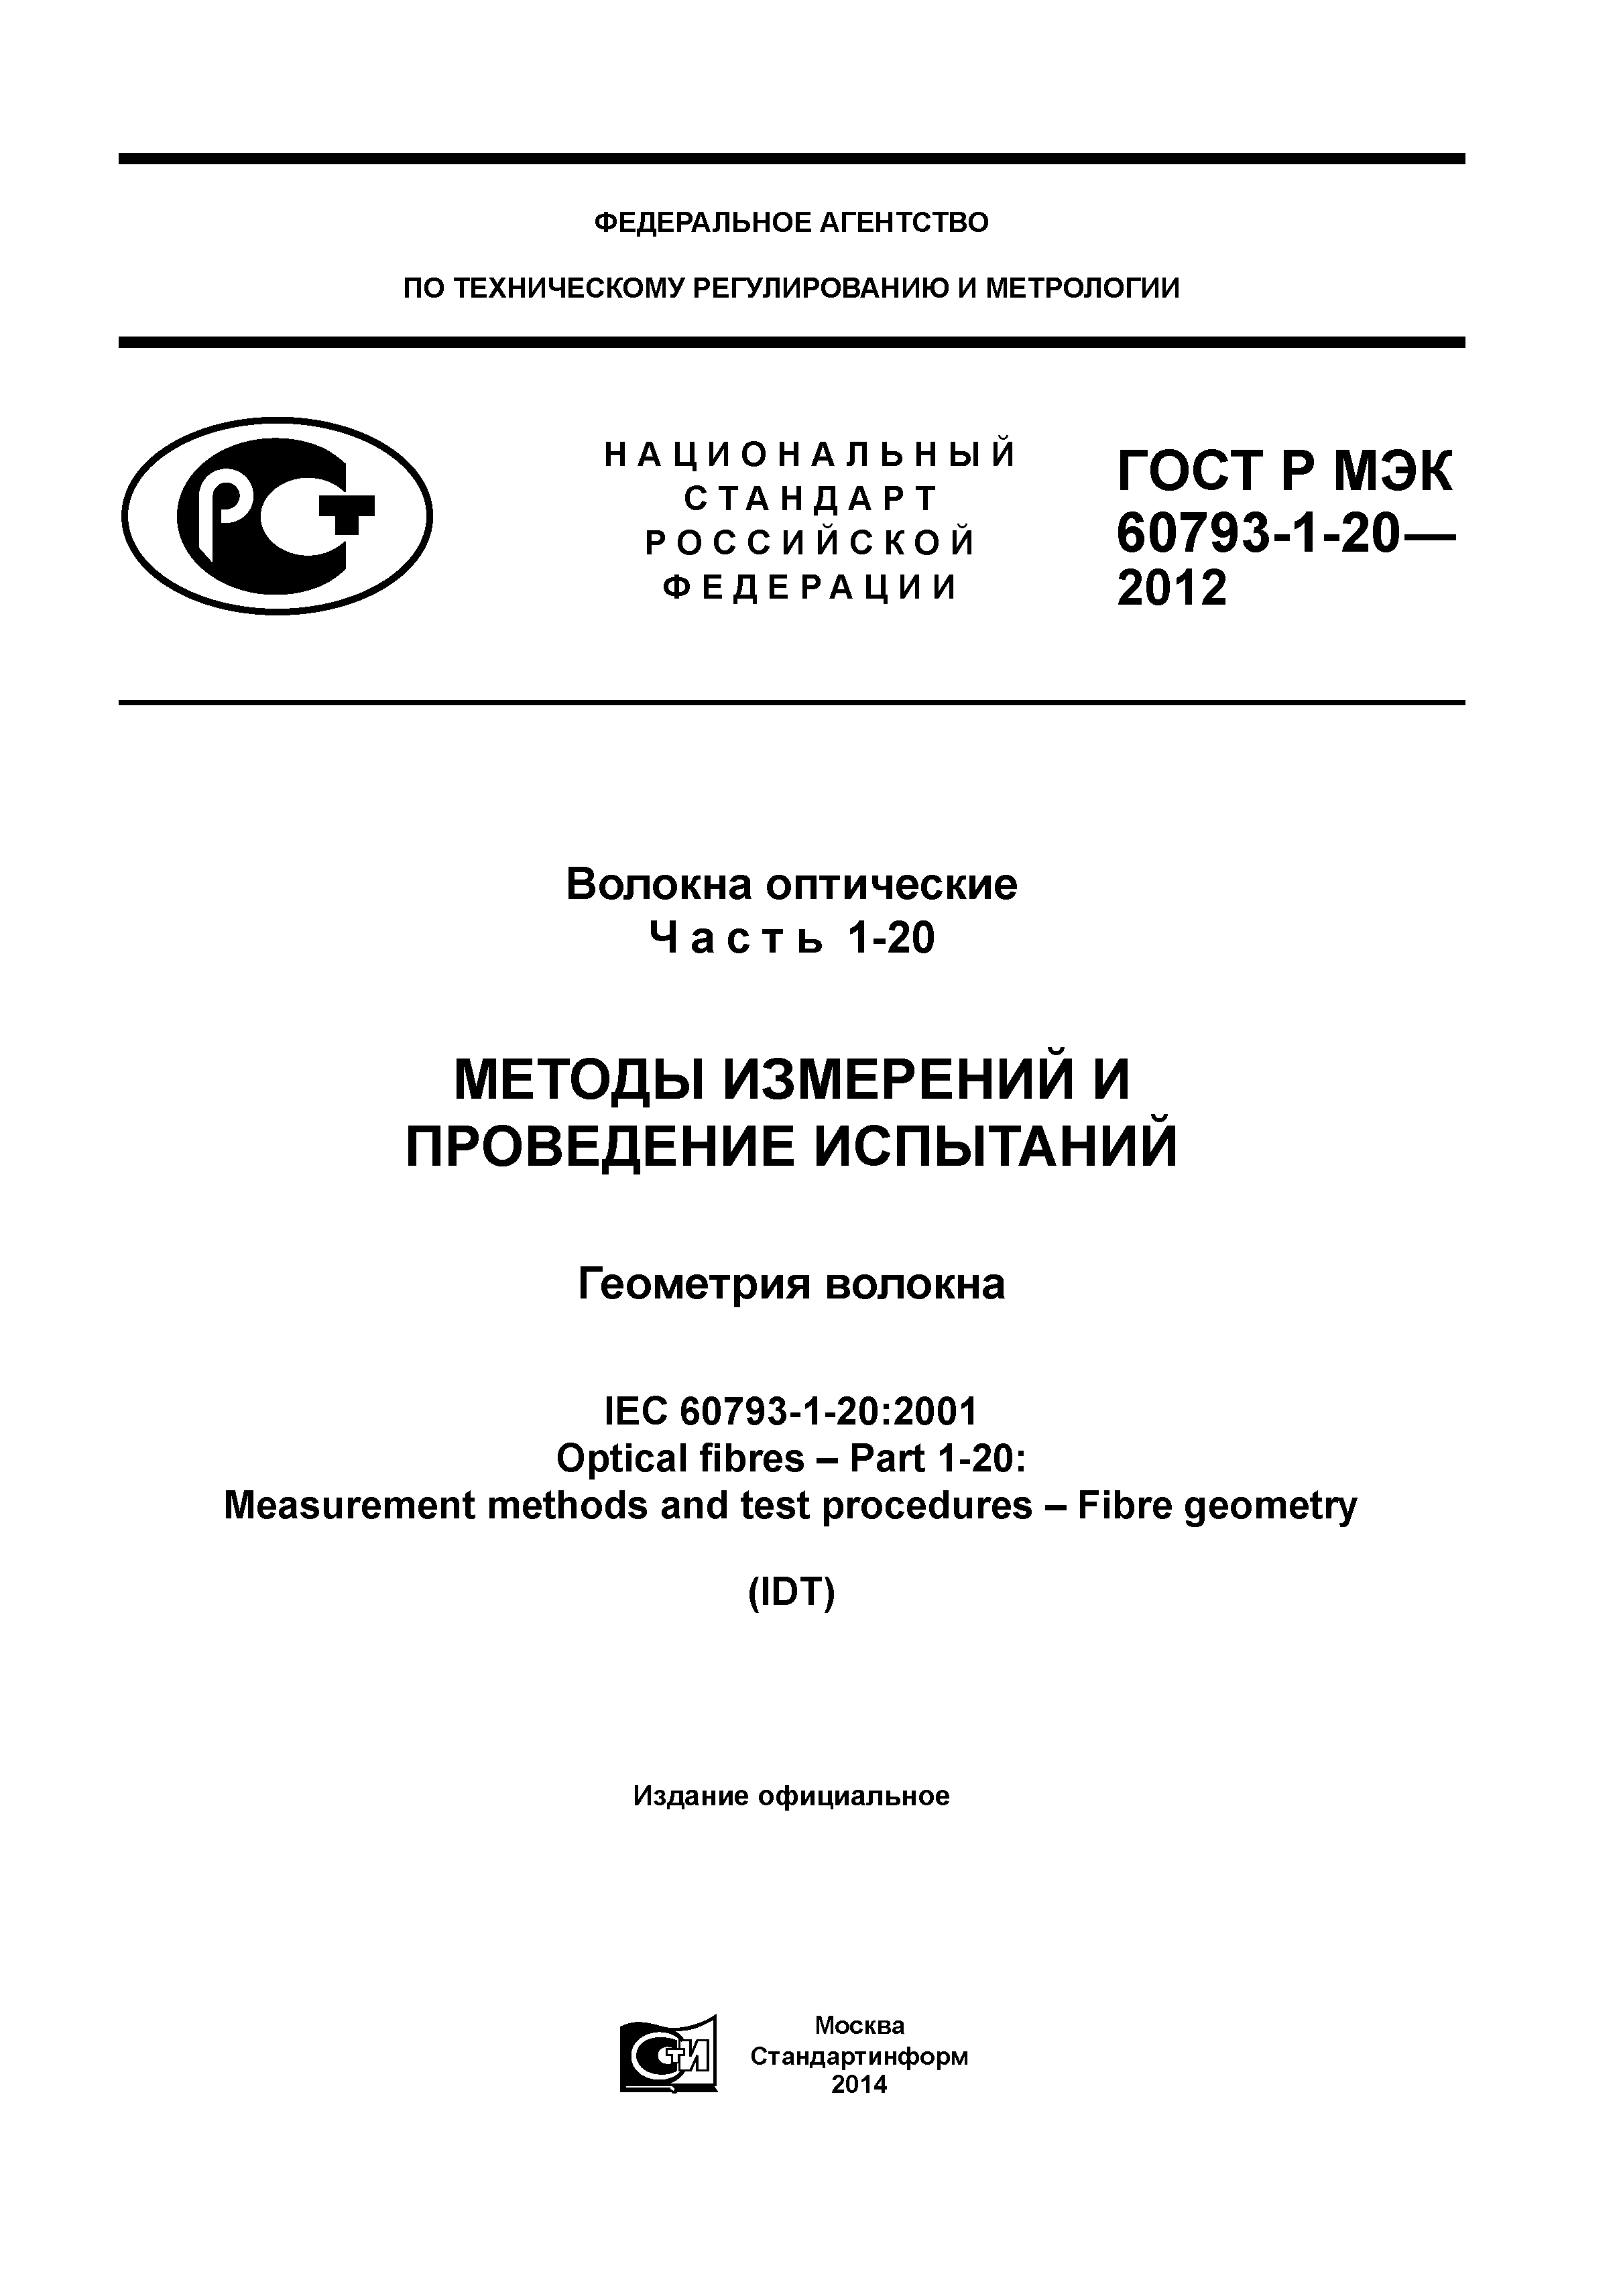 ГОСТ Р МЭК 60793-1-20-2012